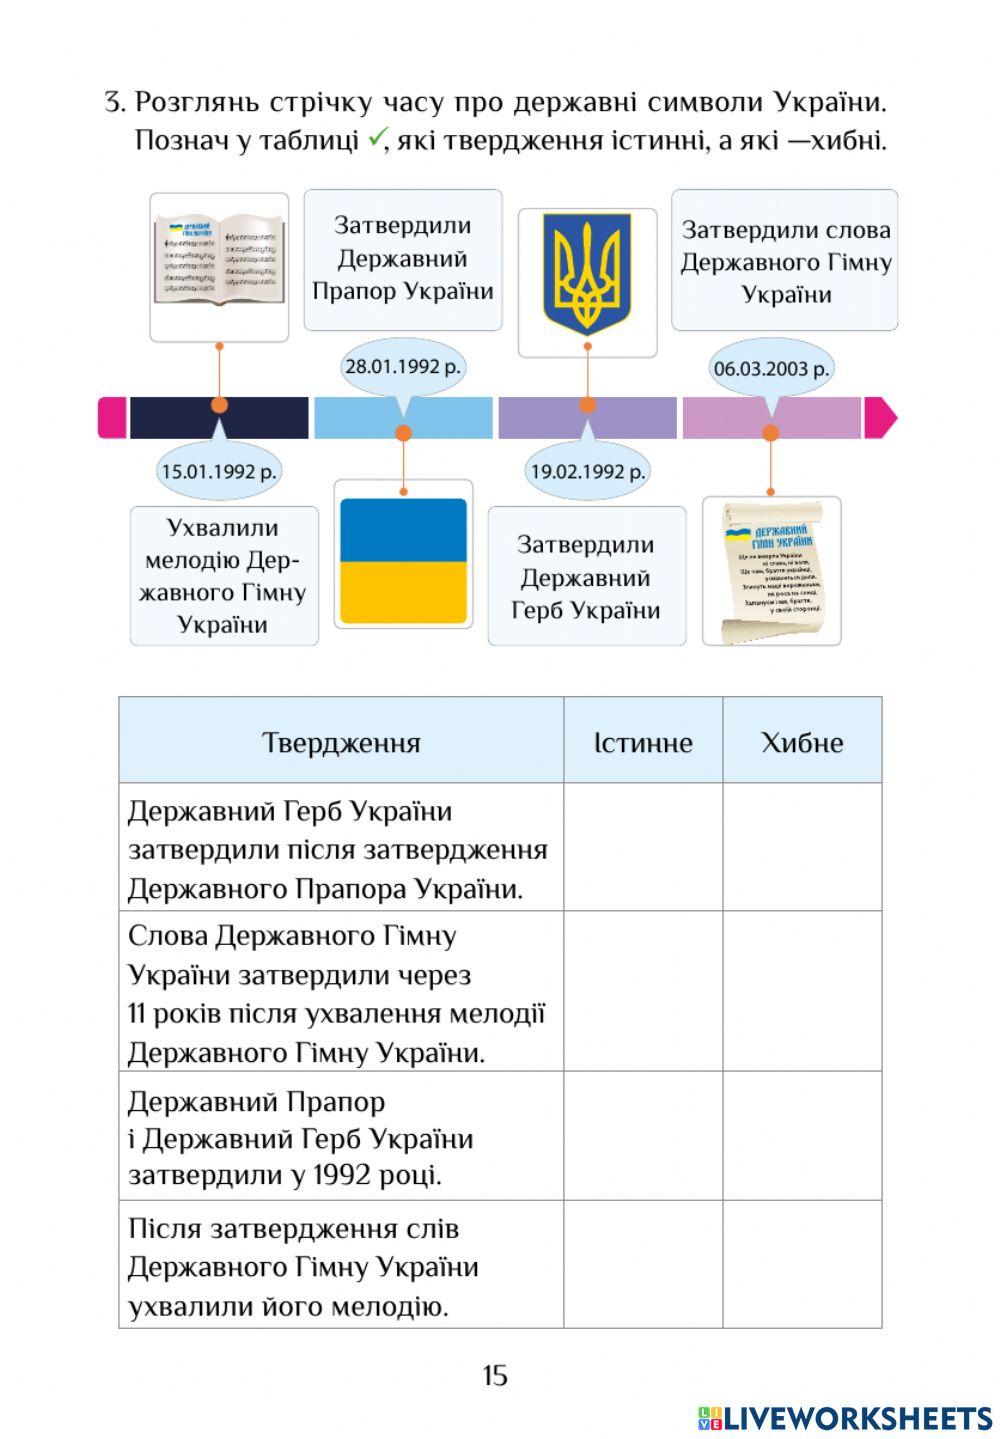 ЯДС РЗ с. 14-15 Конституція України